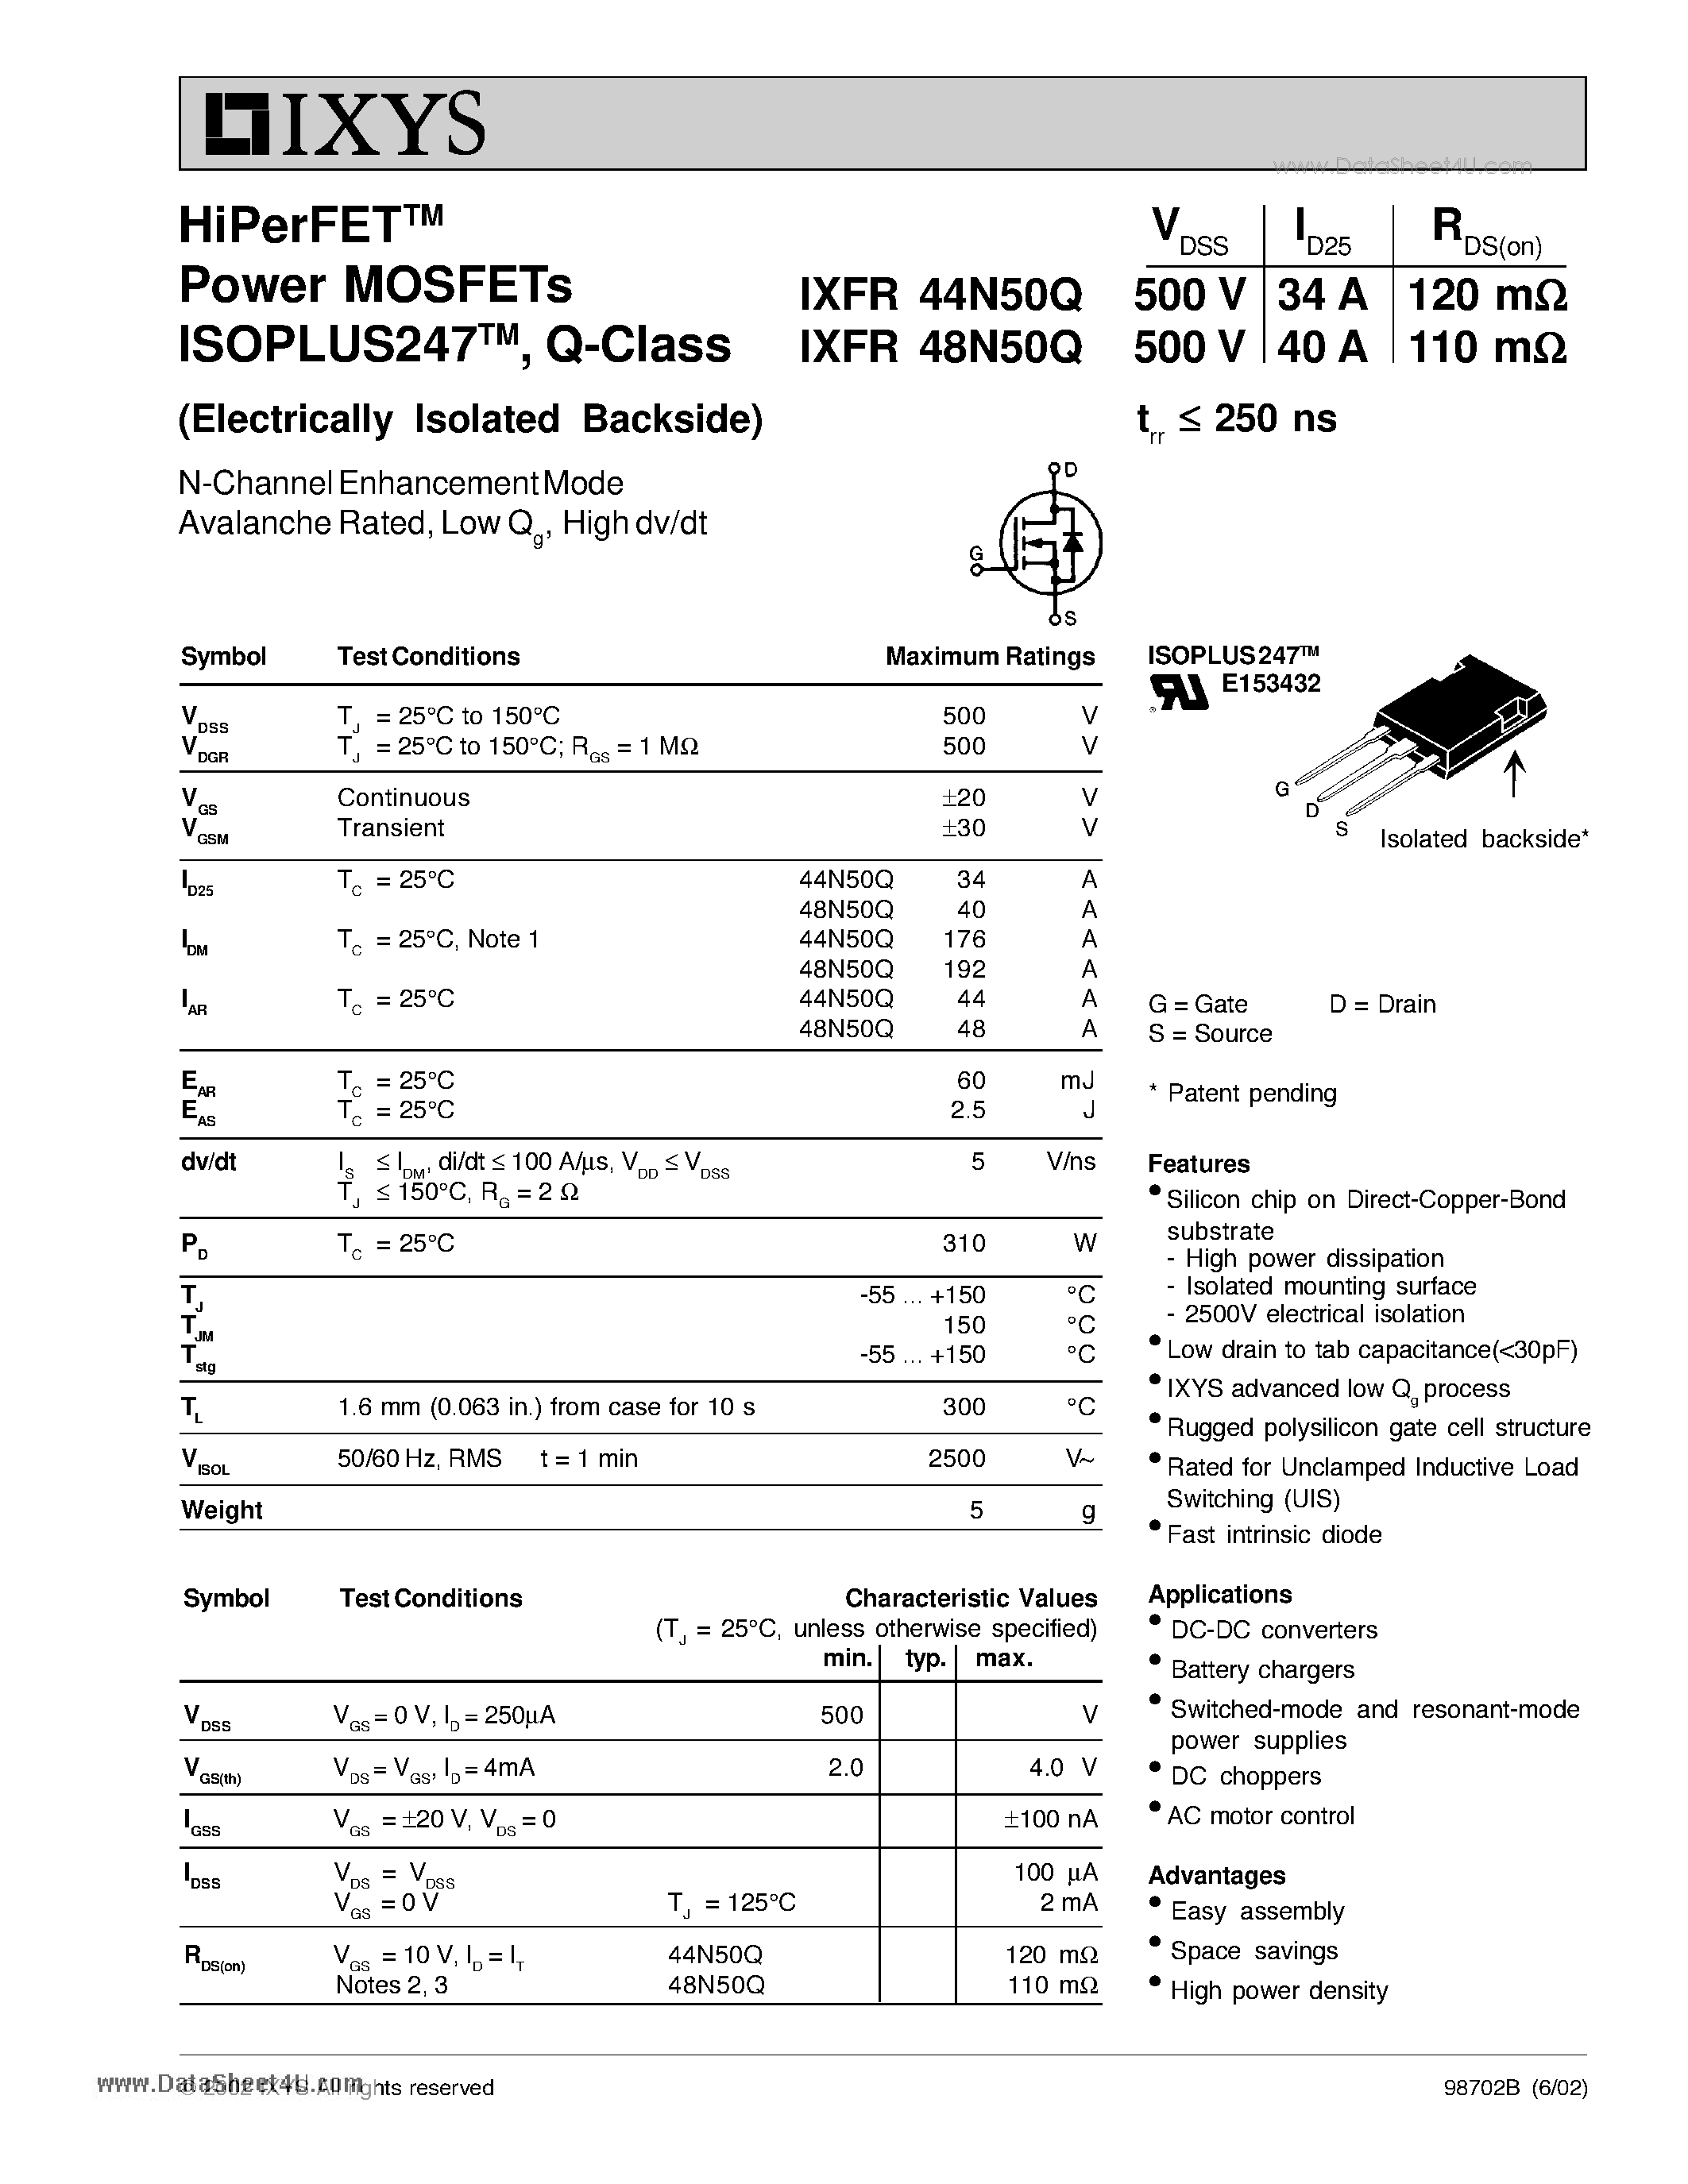 Даташит IXFR44N50Q - HiPerFET Power MOSFETs ISOPLUS247 Q-Class страница 1